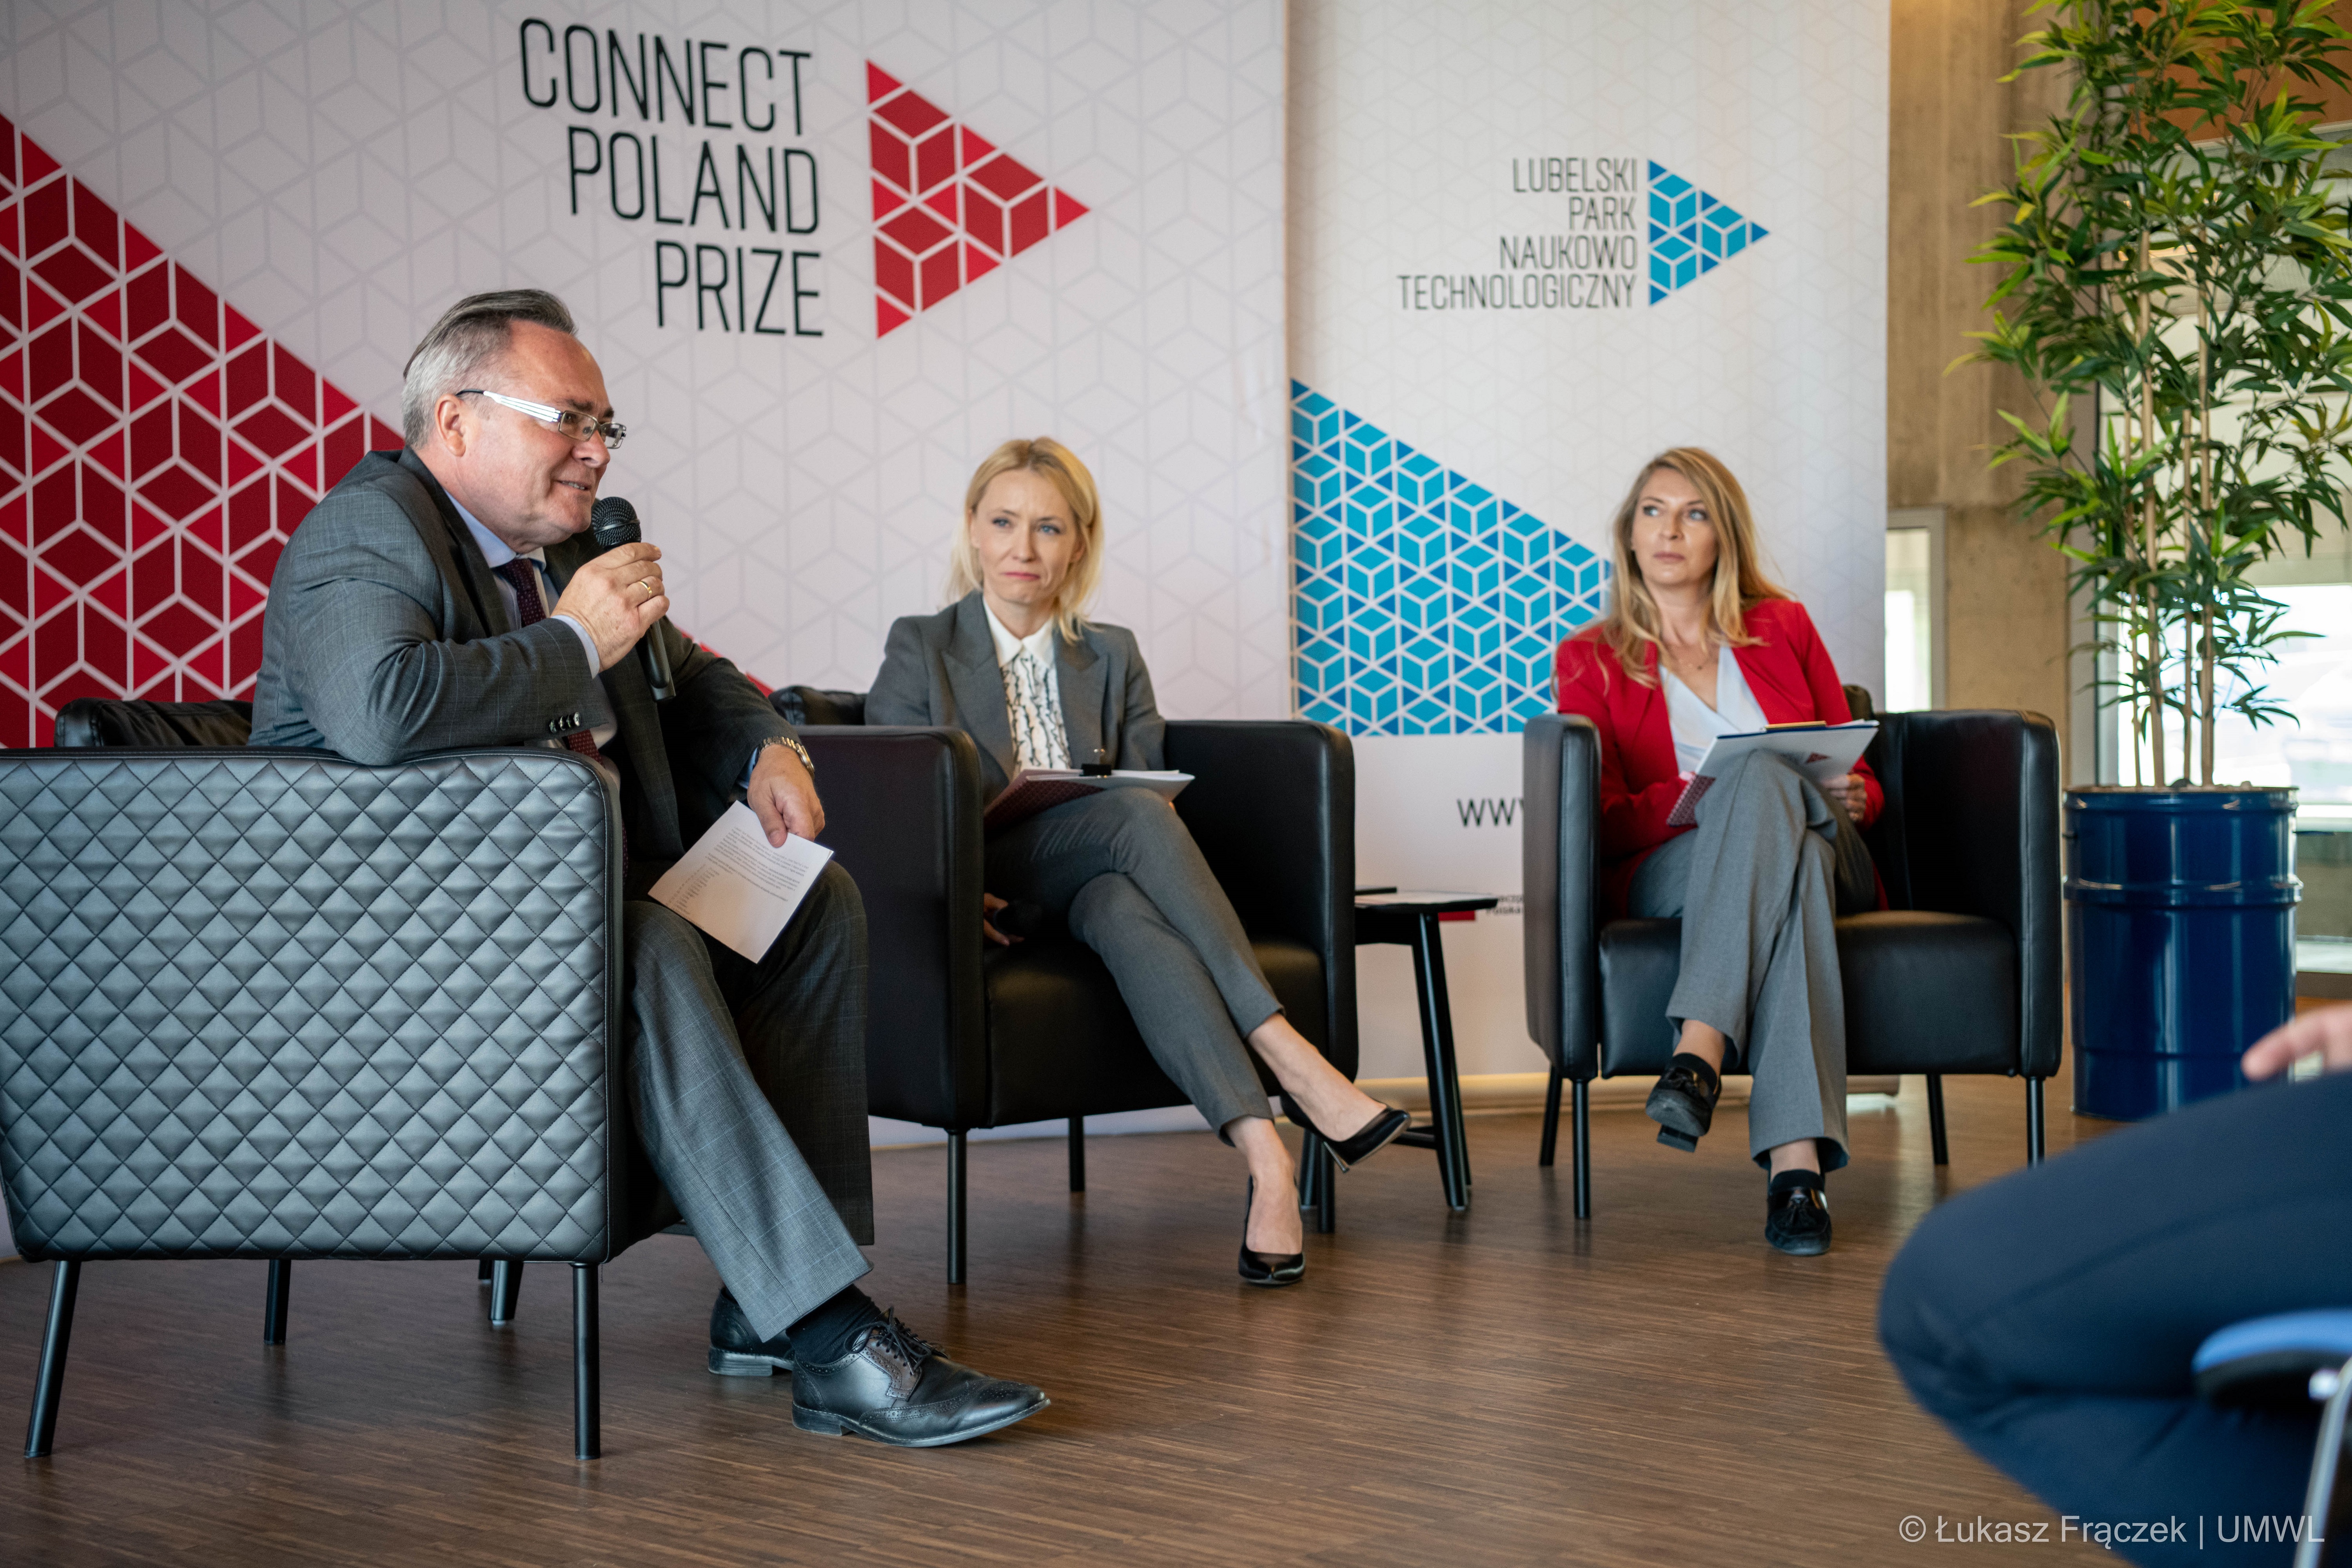 „Connect Poland Prize” – konferencja w Lubelskim Parku Naukowo-Technologicznym